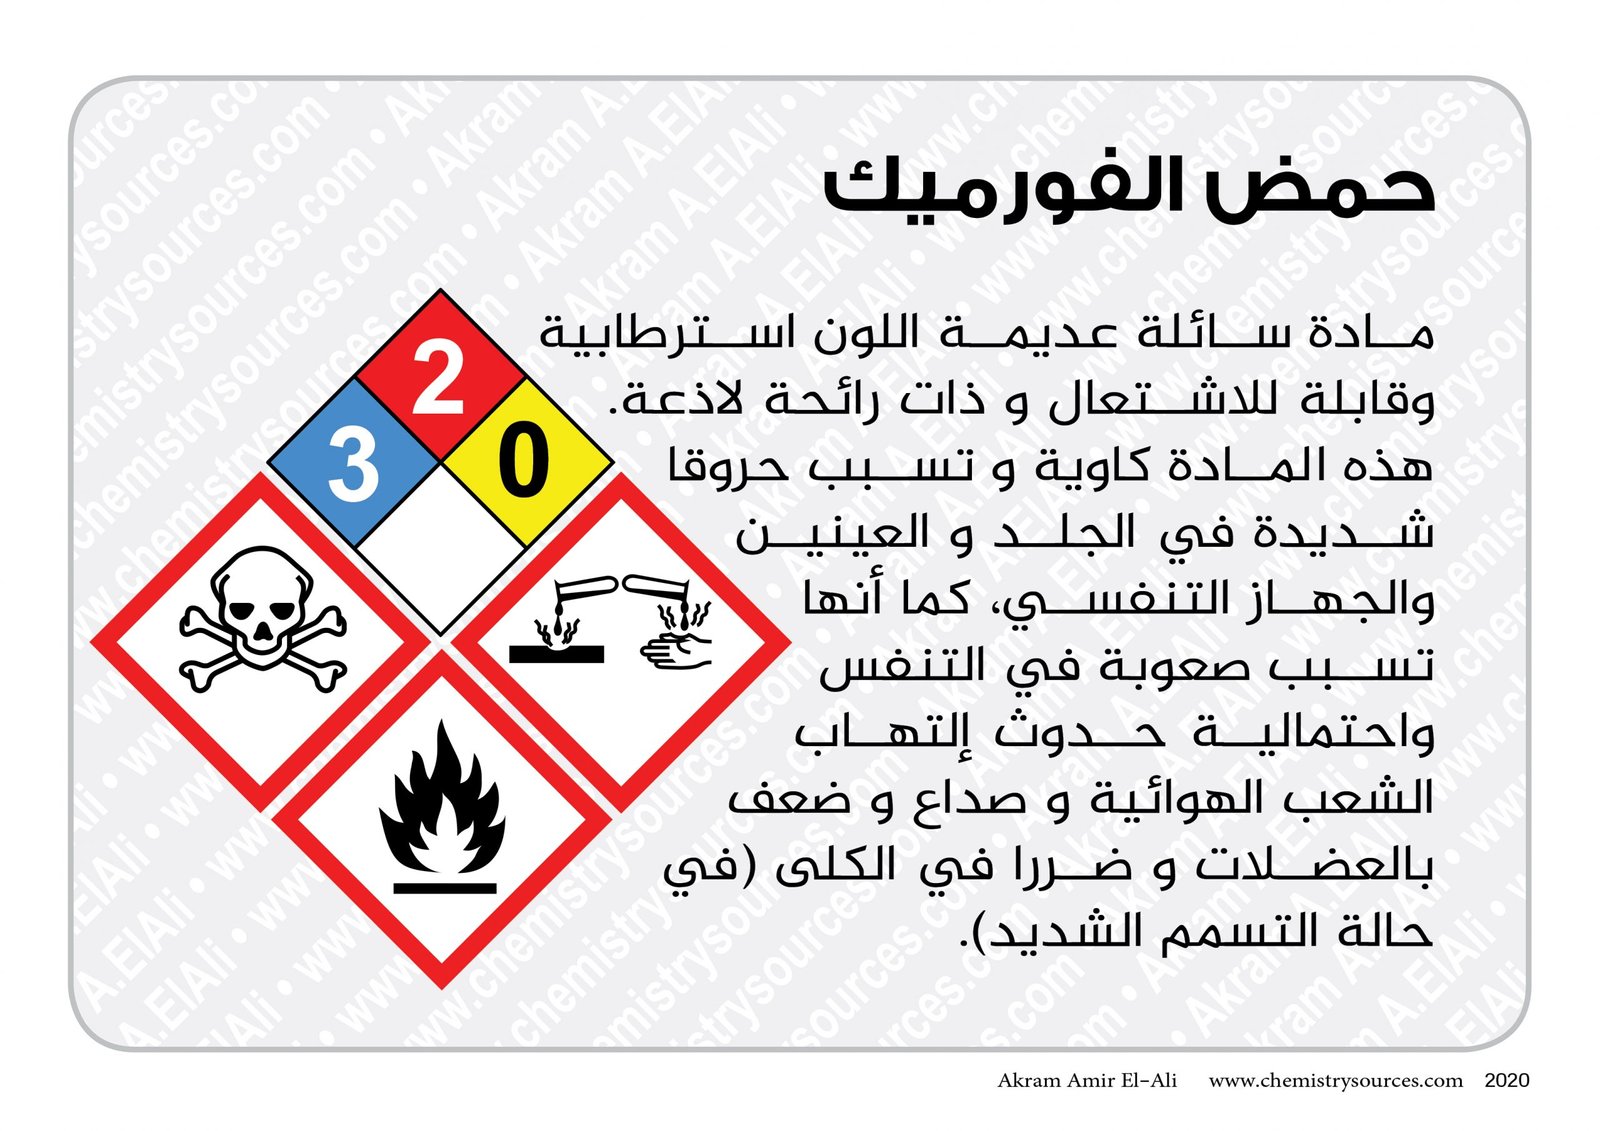 بطاقات اخطار المواد الكيميائية المختصرة14 scaled